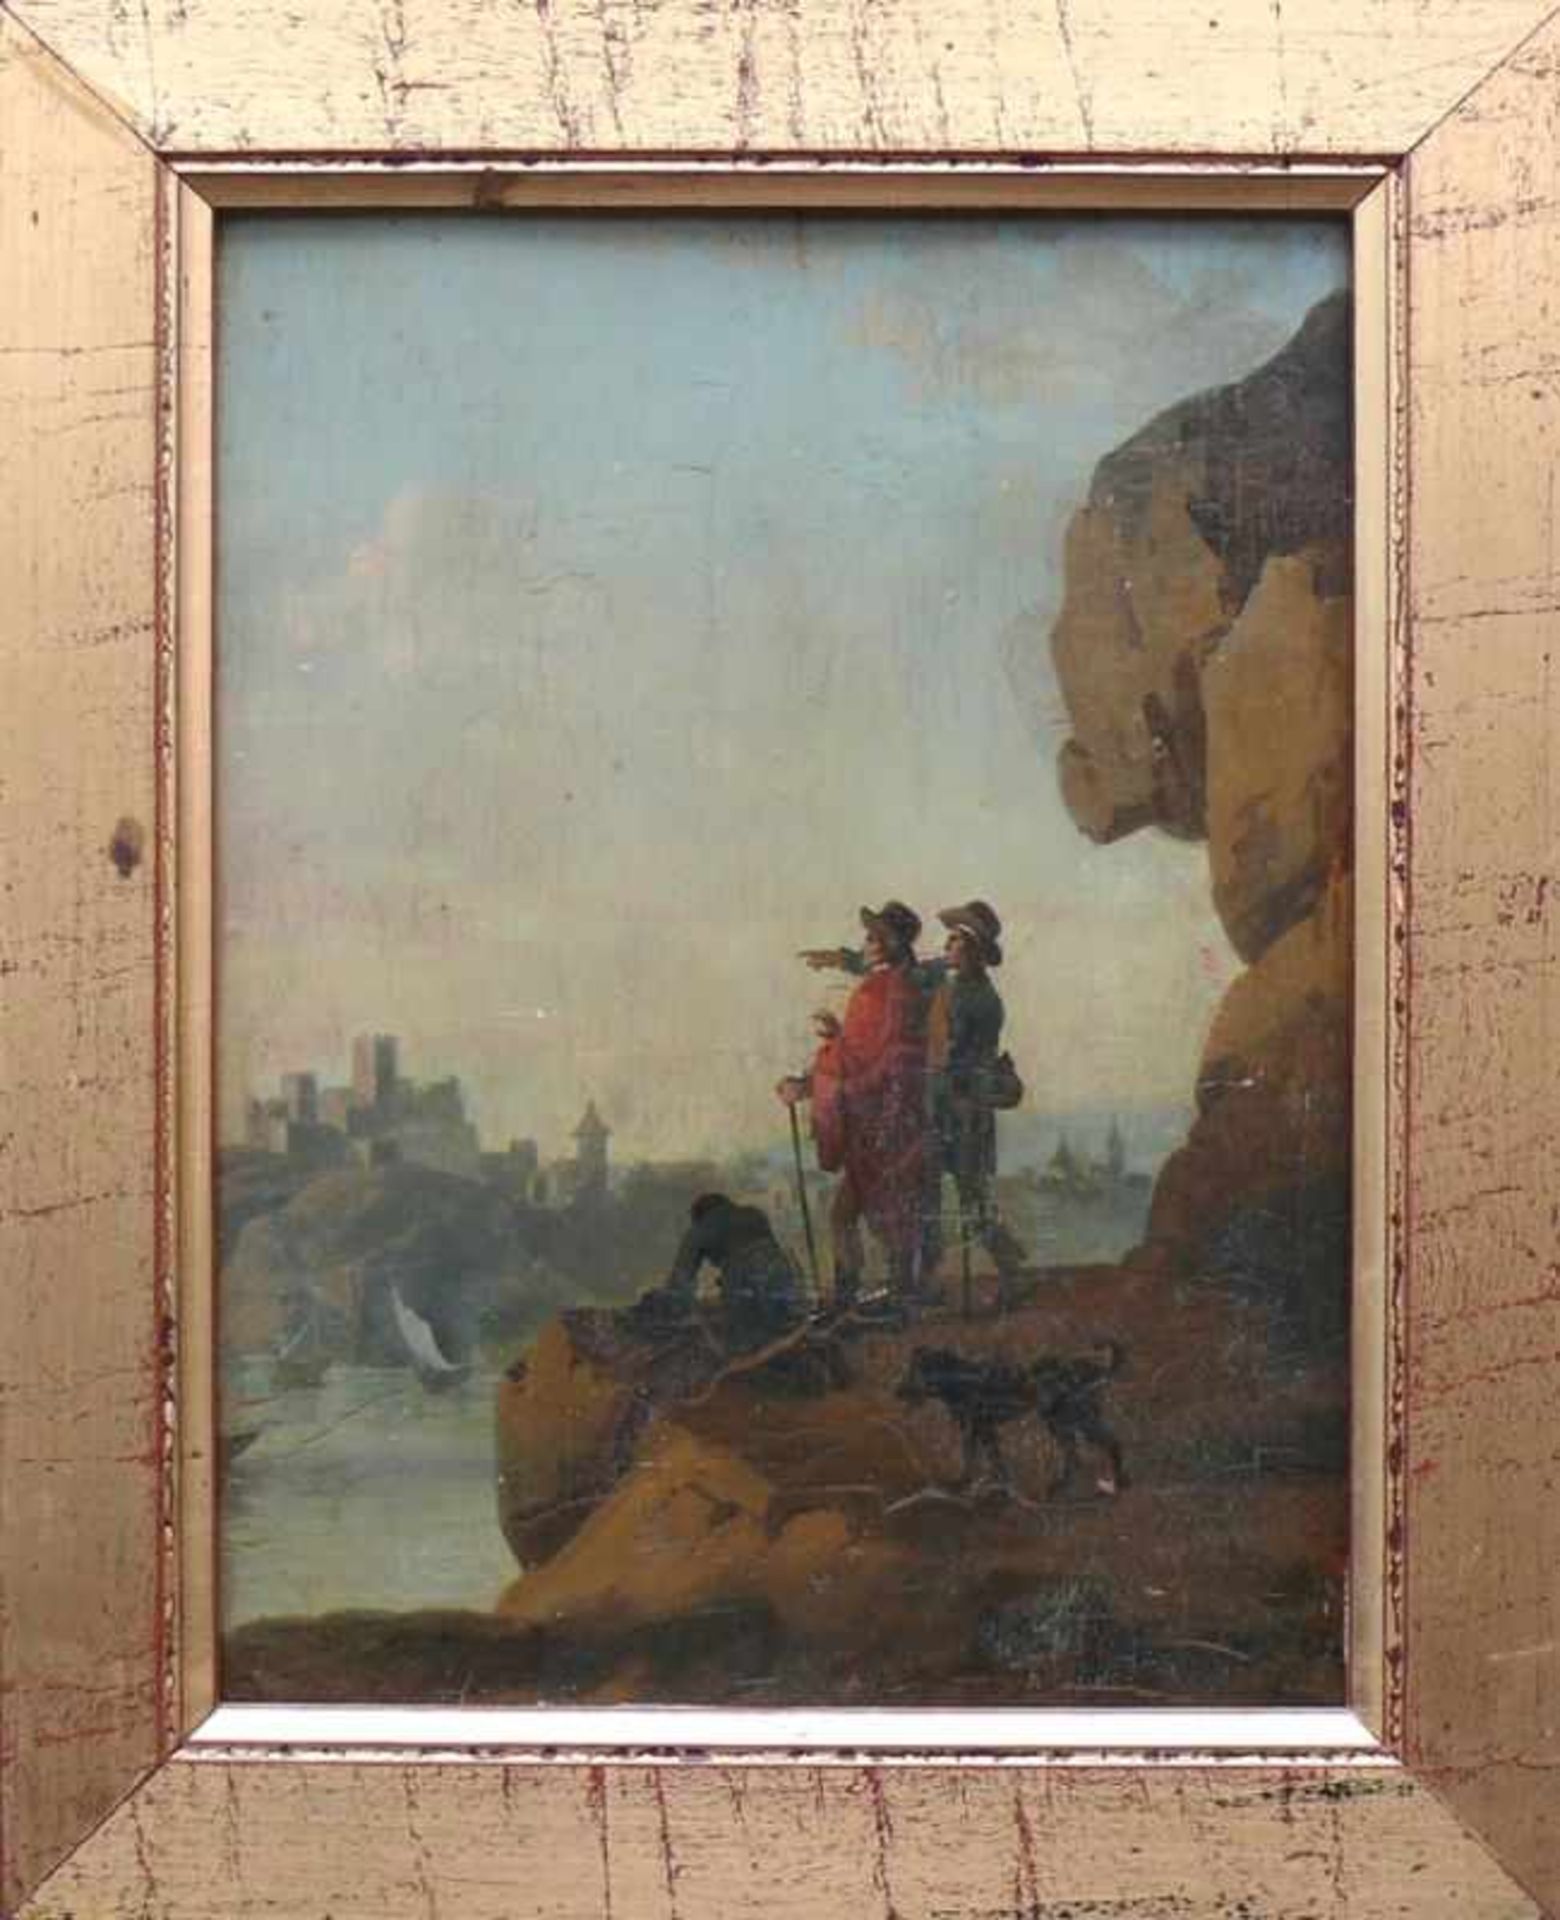 Anonym (19.Jh.) "Wanderer mit Hund auf Felsvorsprung" über Fluss auf einen Ort sehend; links unten